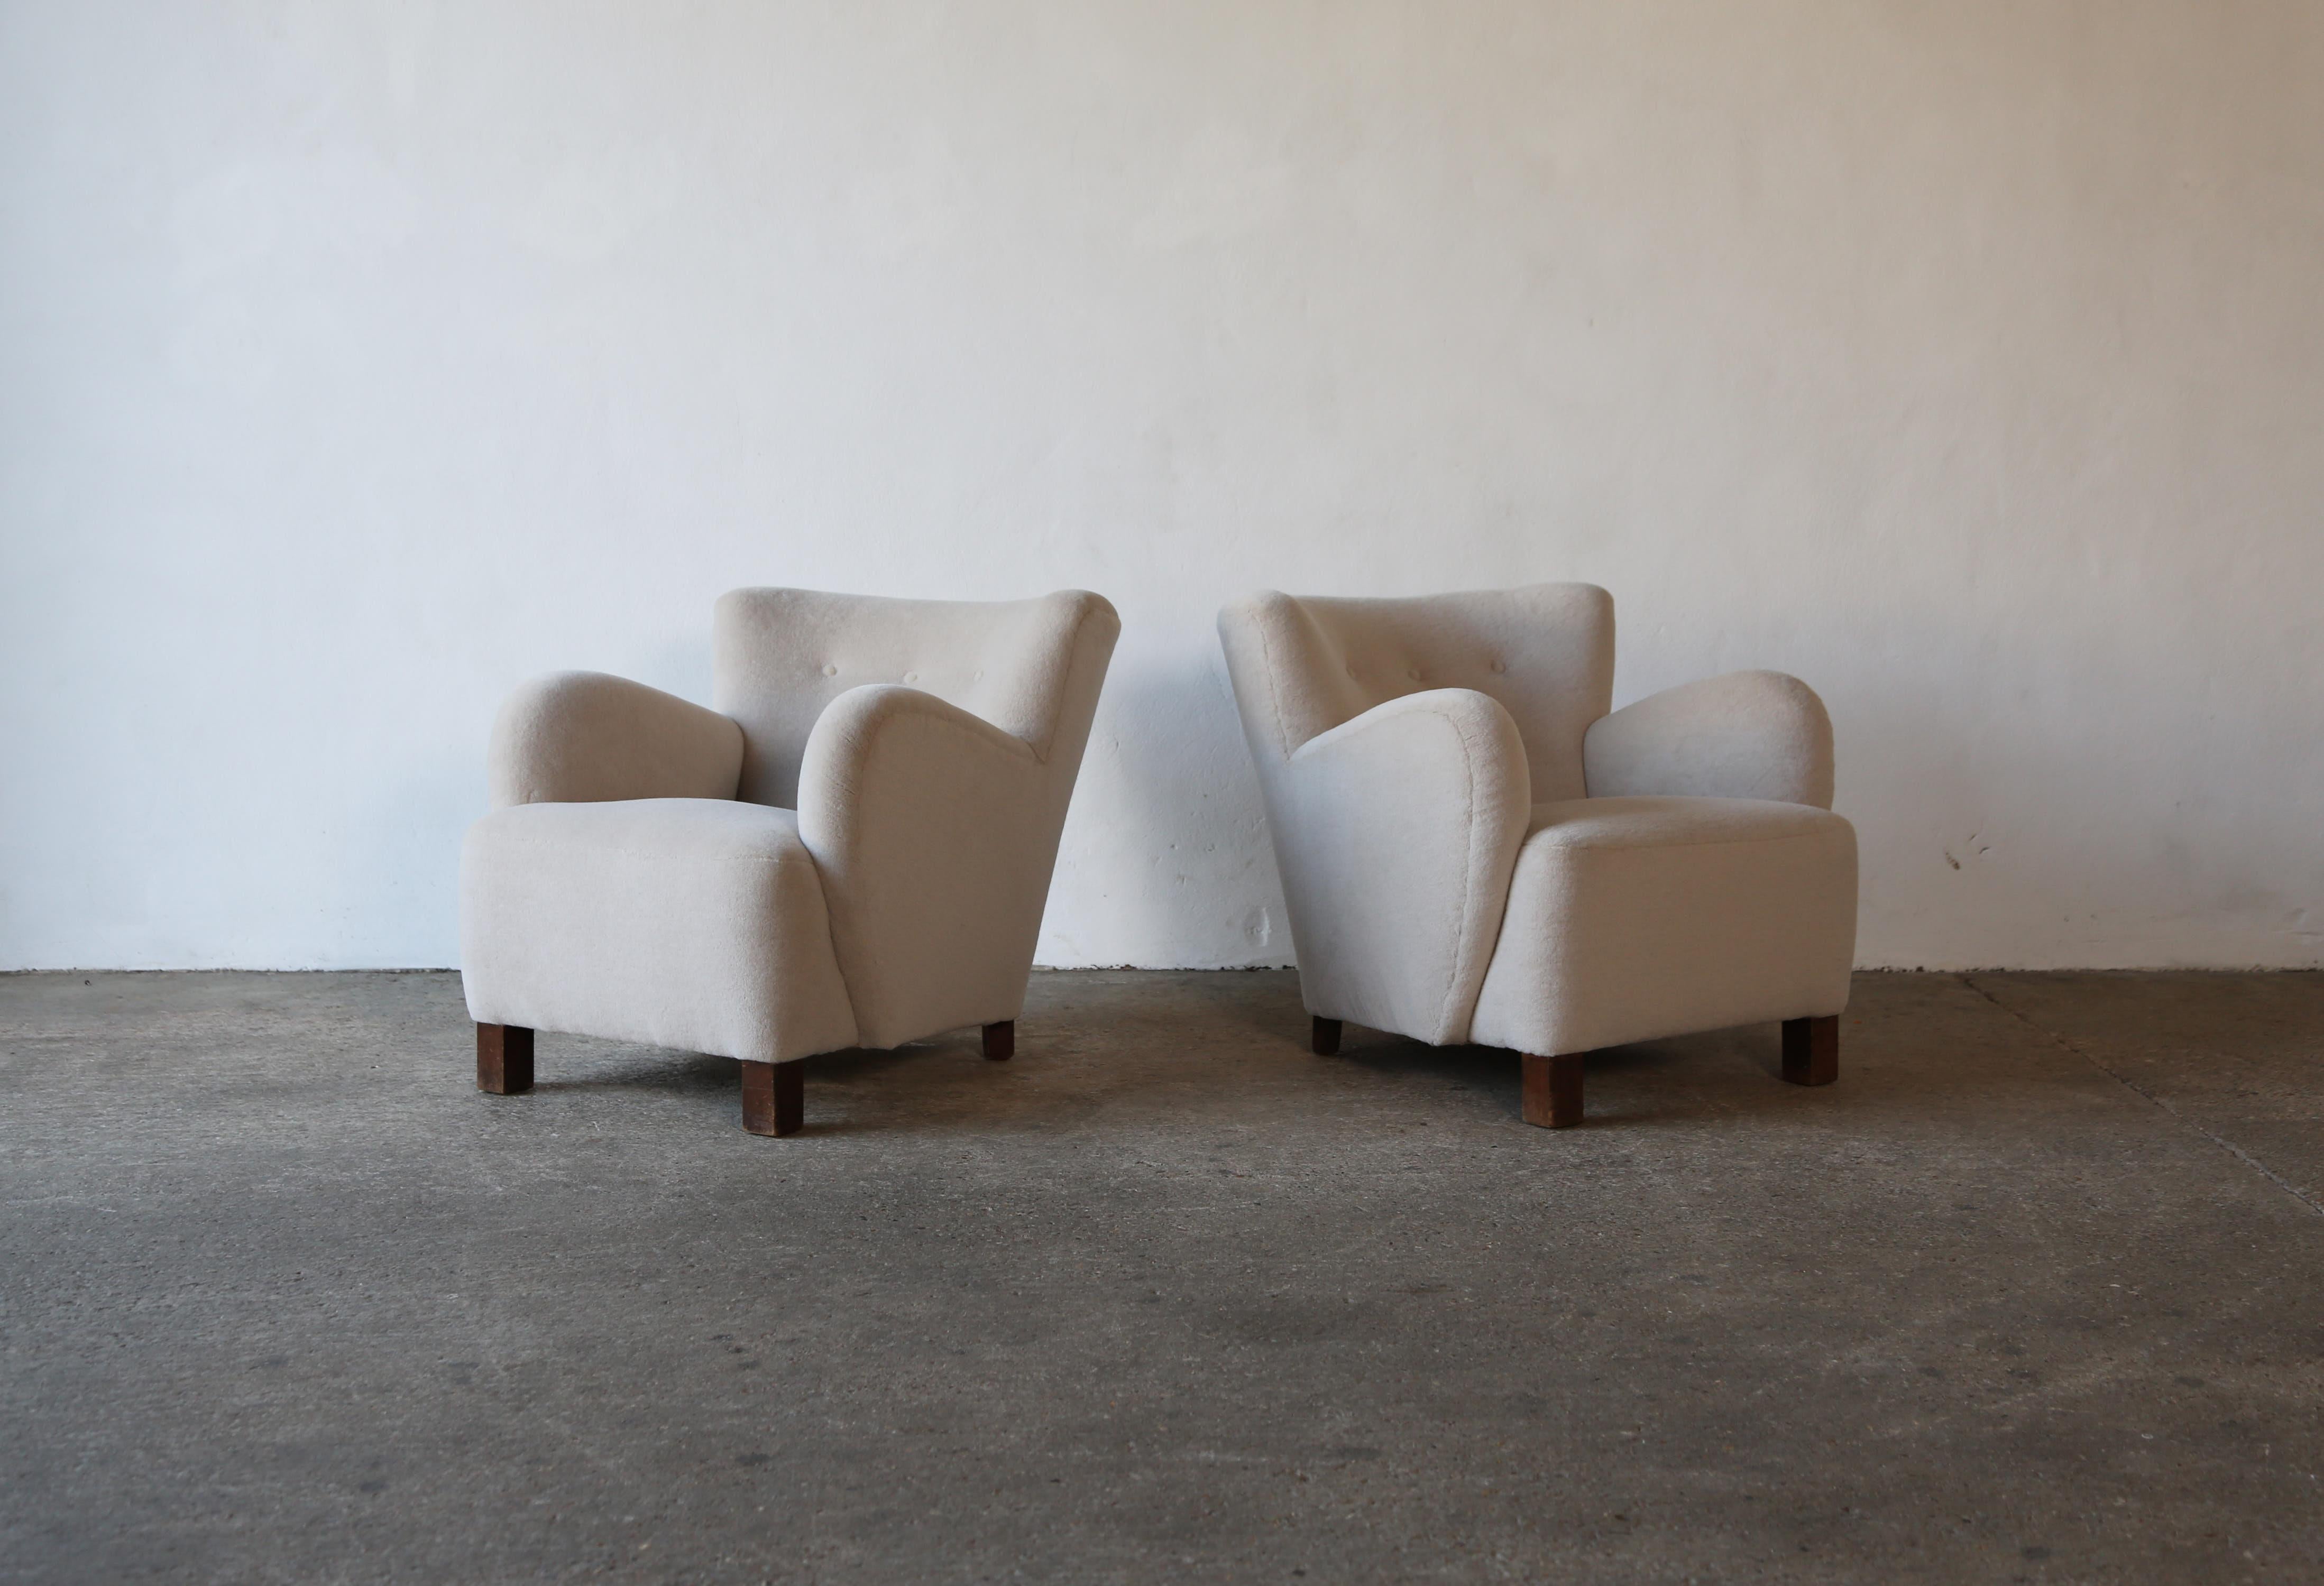 Superbe paire de fauteuils danois des années 1940. Nouvellement revêtu d'un tissu en alpaga pur, doux et de première qualité. Expédition rapide dans le monde entier.
  
